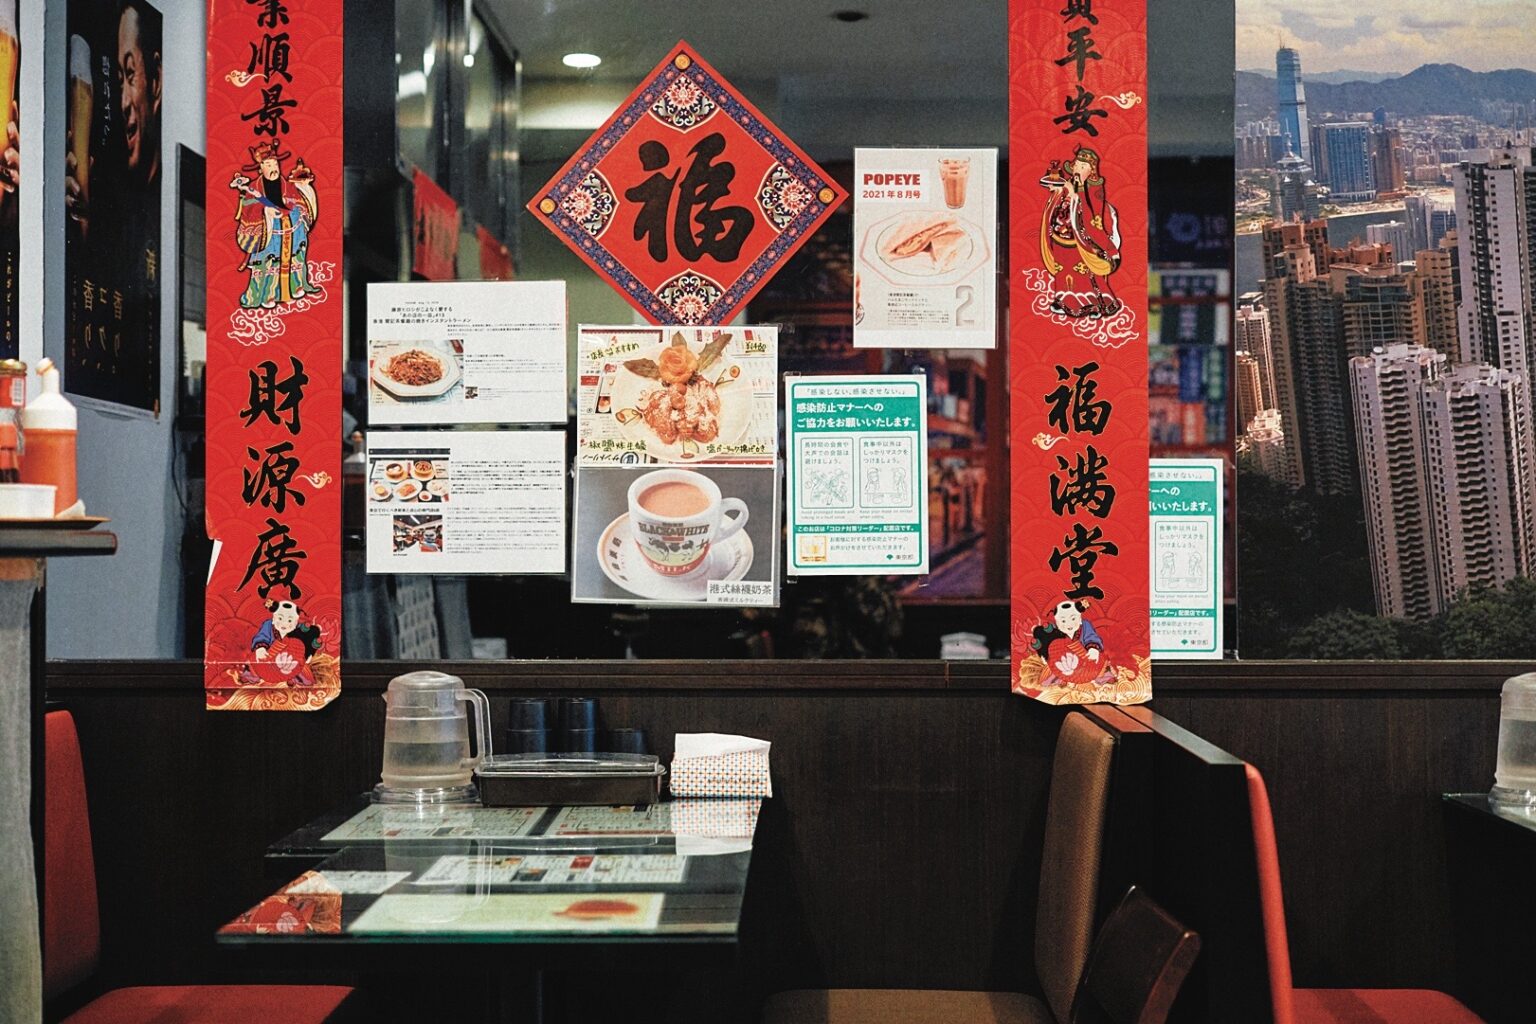 台湾、香港などアジア各国のフォトジェニックな一軒にご案内。可愛いカップとスイーツで香港式ティータイムをいただける〈香港 贊記茶餐廳〉。